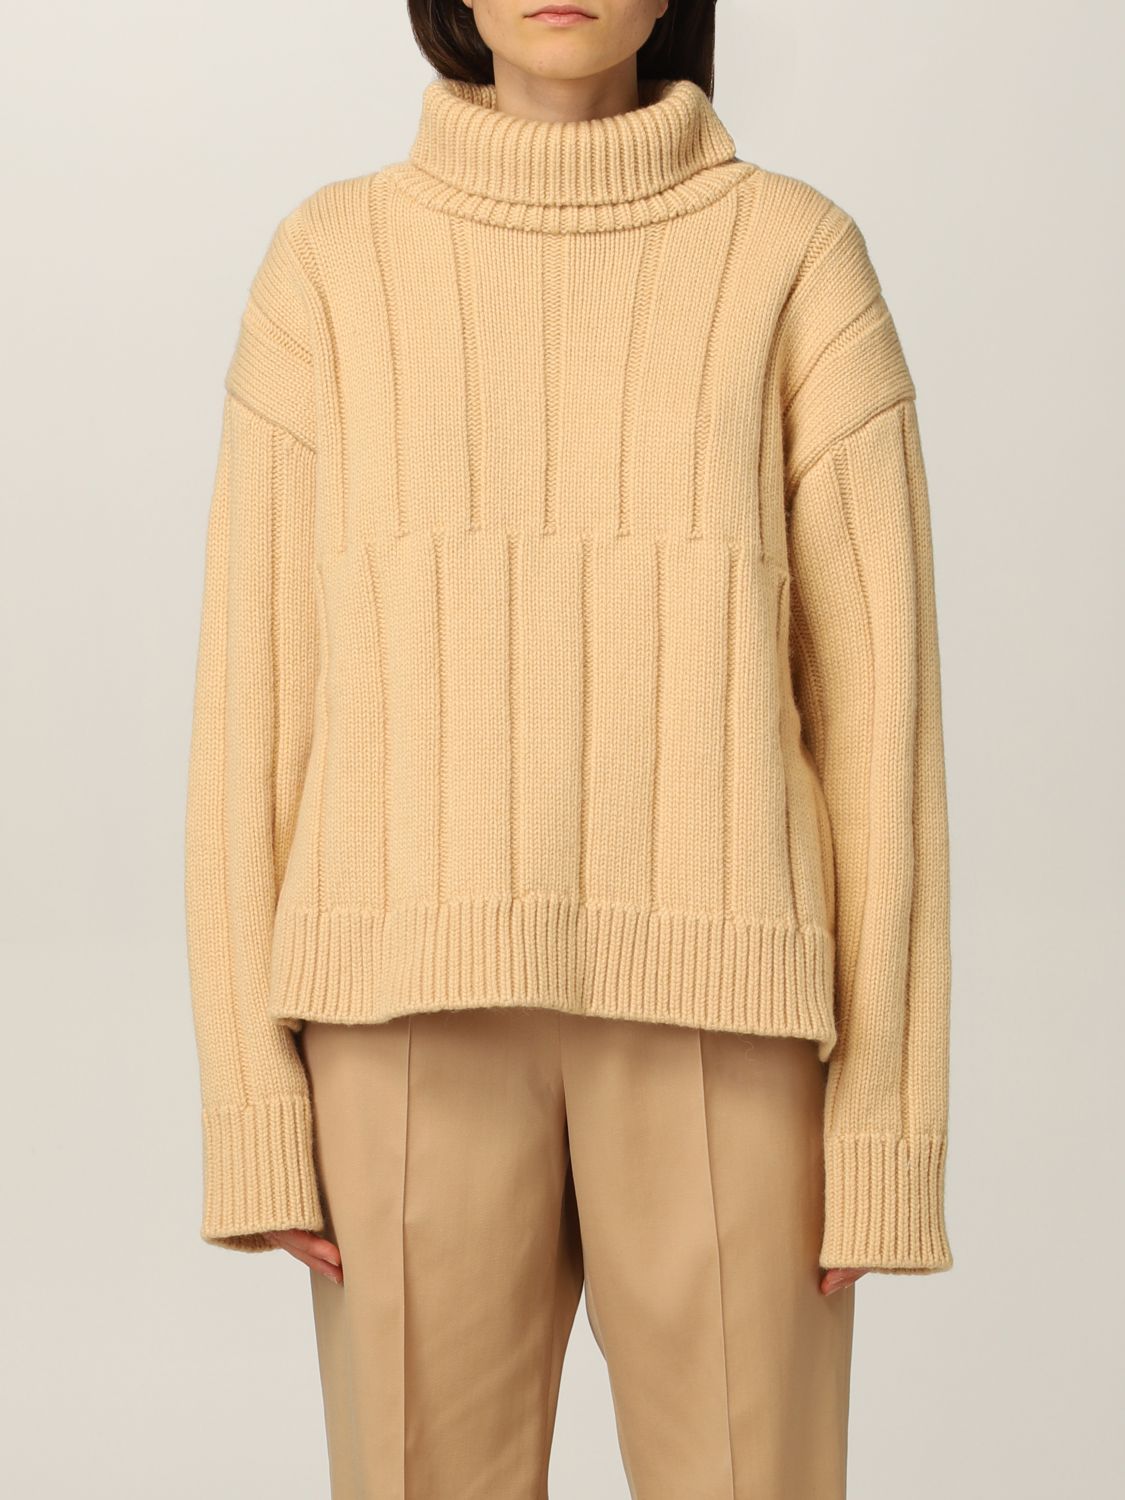 Jil Sander pullover in wool and Alpaca